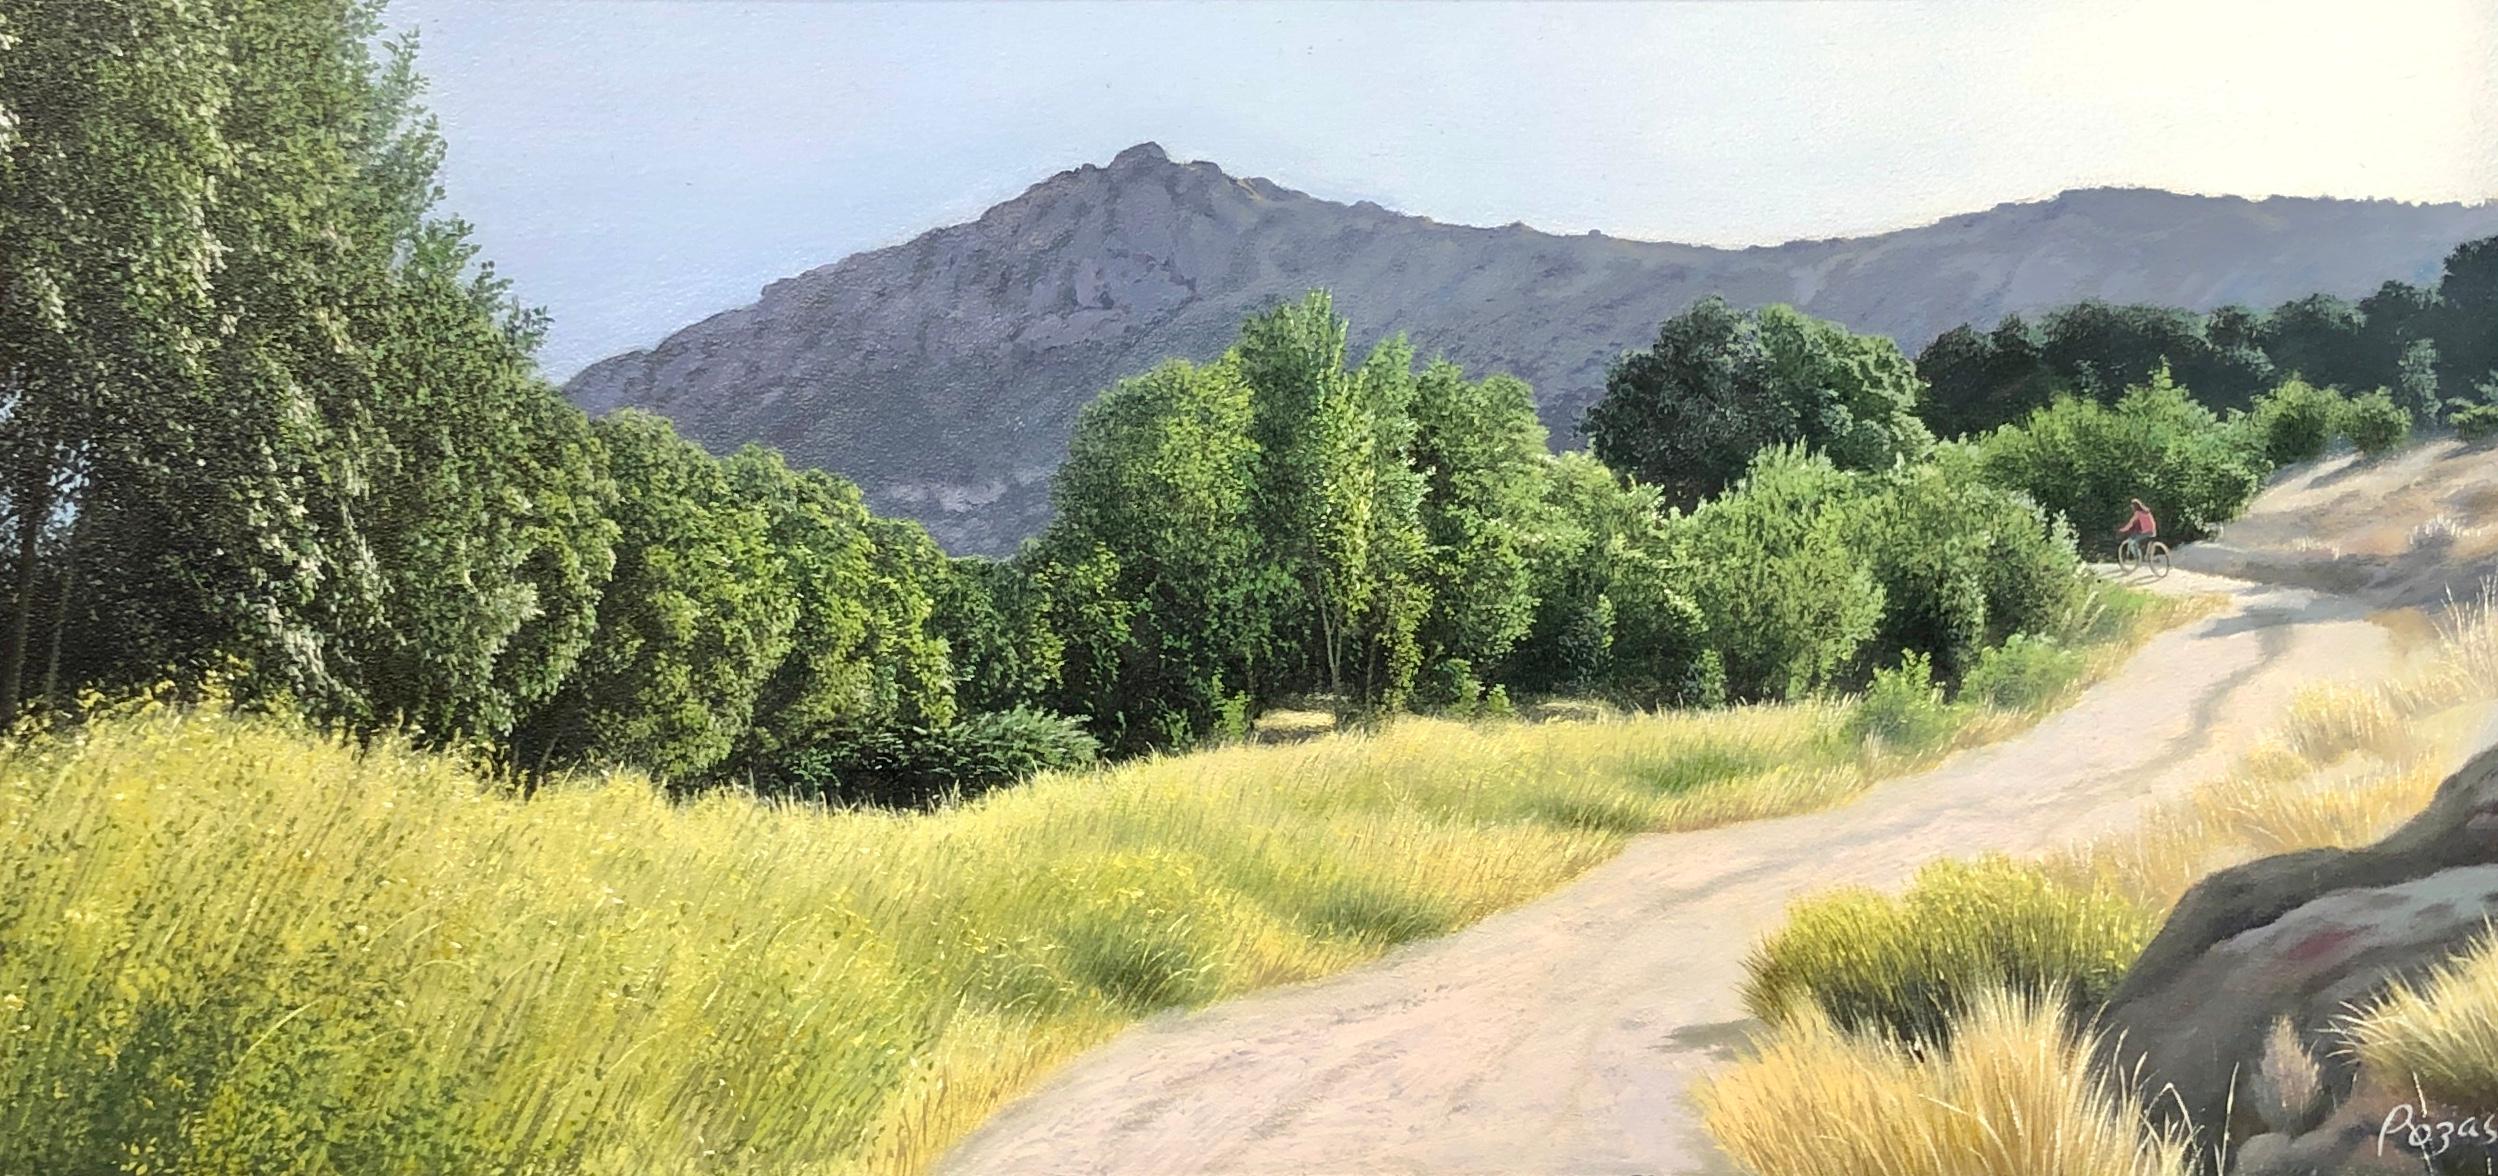 Landscape Painting René Monzón Relova “Pozas” -  Mon espace - Paysage très détaillé avec un chemin menant à des bois denses, encadré